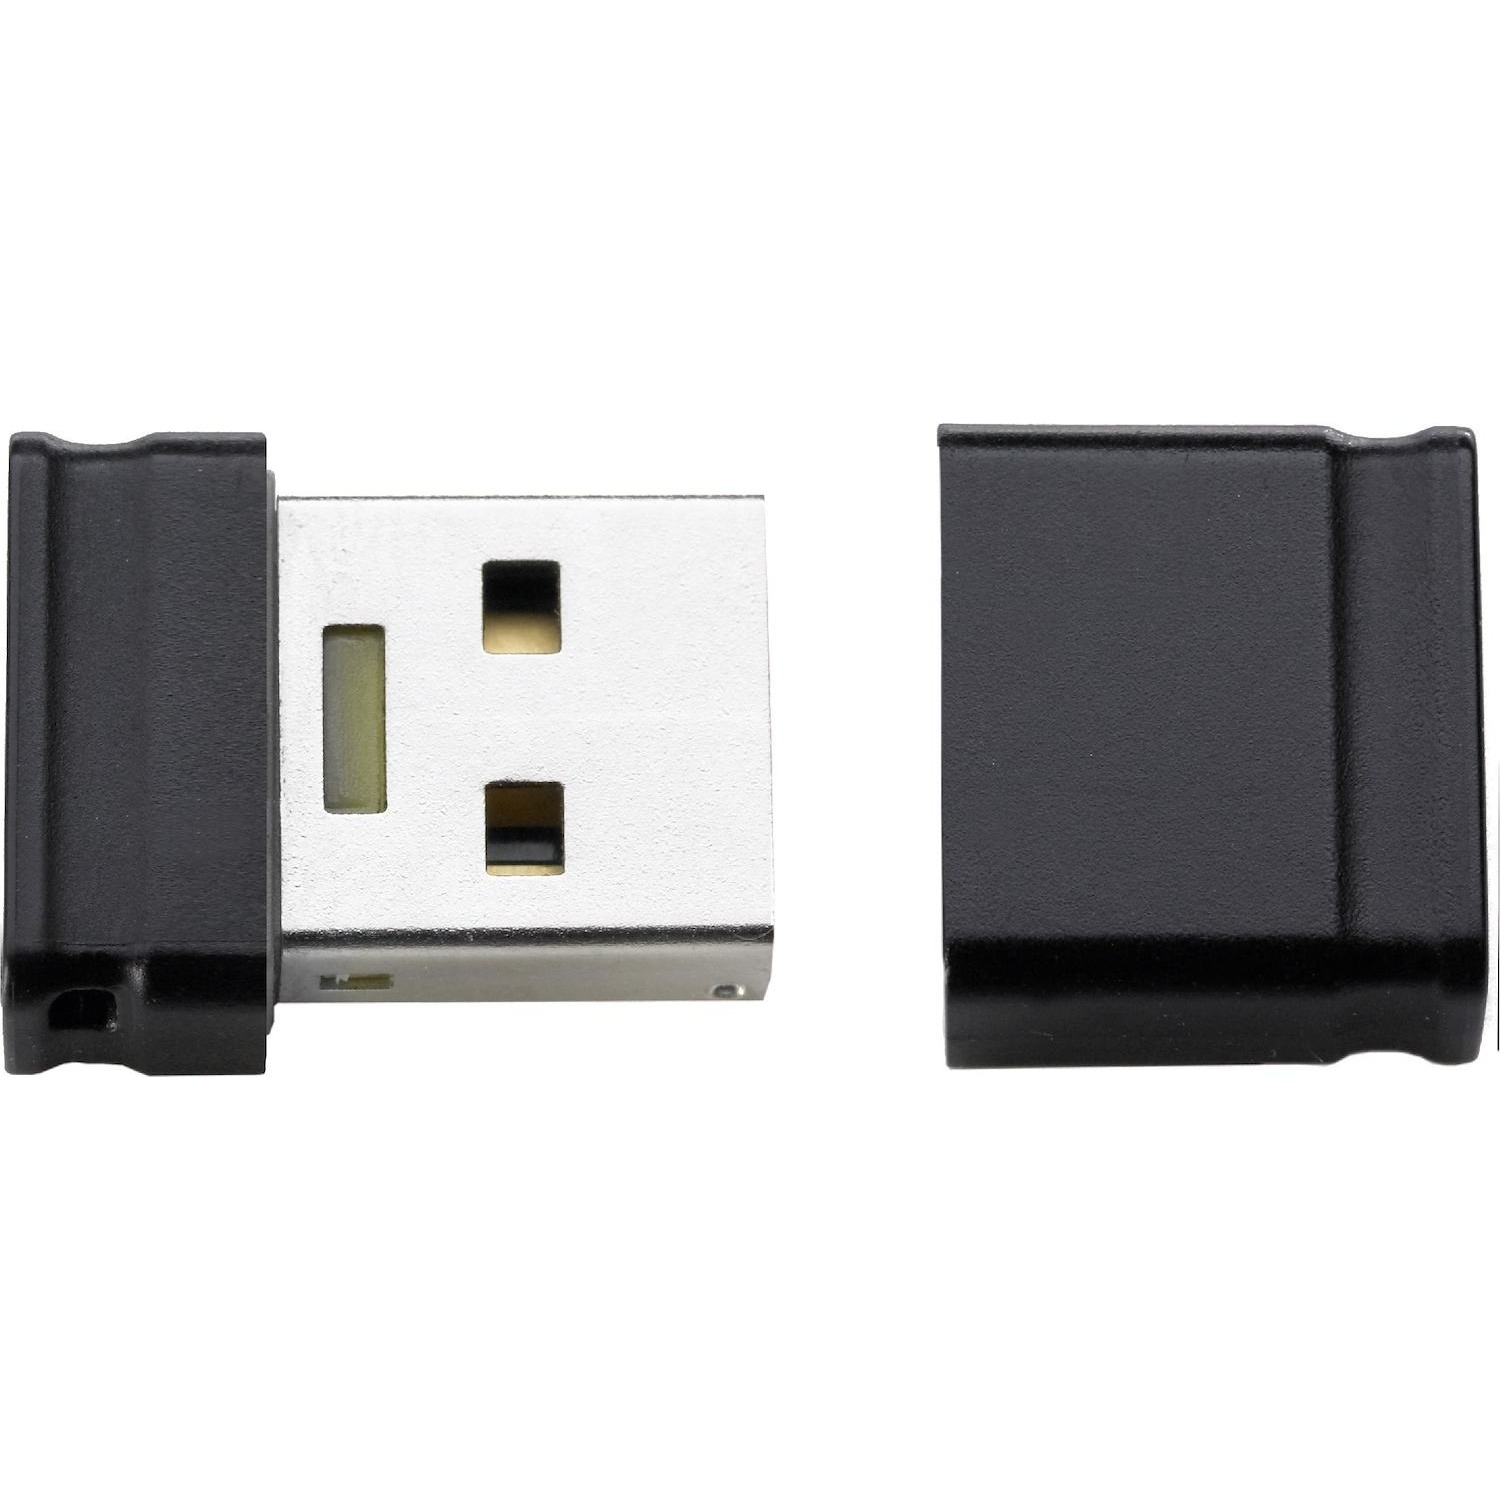 Immagine per Memoria USB Intenso Microline 32GB da DIMOStore